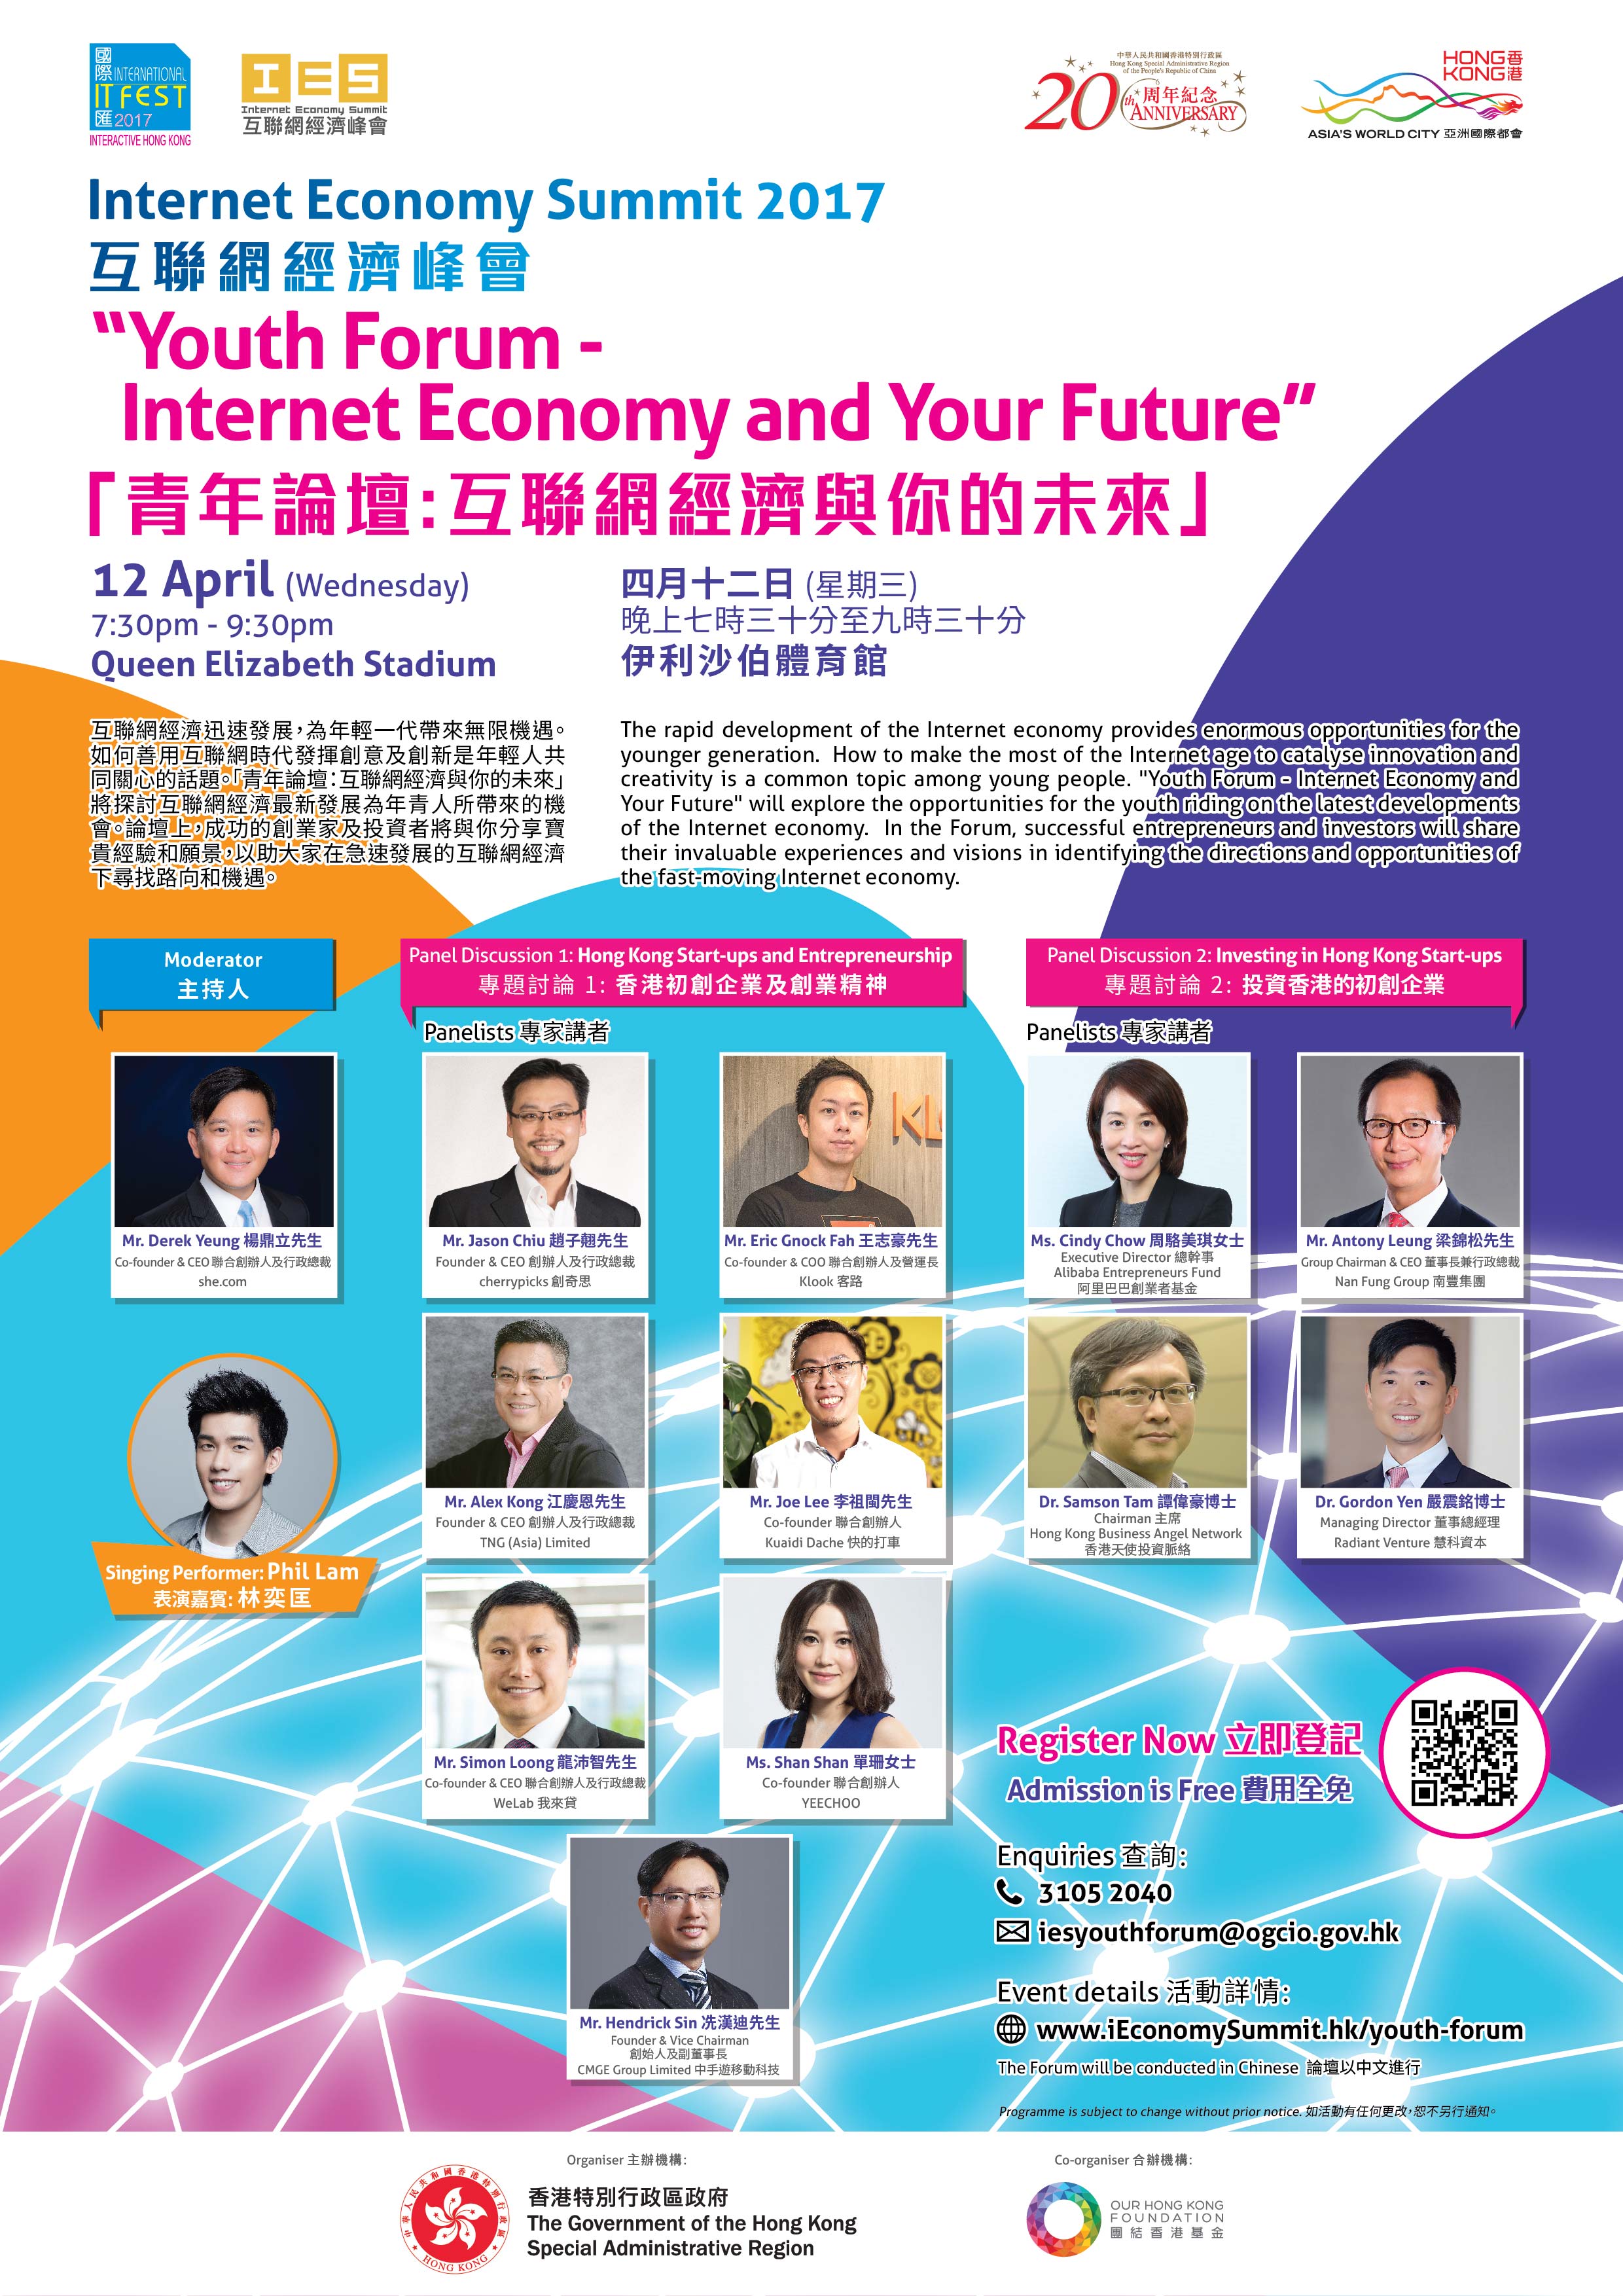 青年創業軍最新創業活動: 2017互聯網經濟峰會青年論壇    互聯網經濟與你的未來